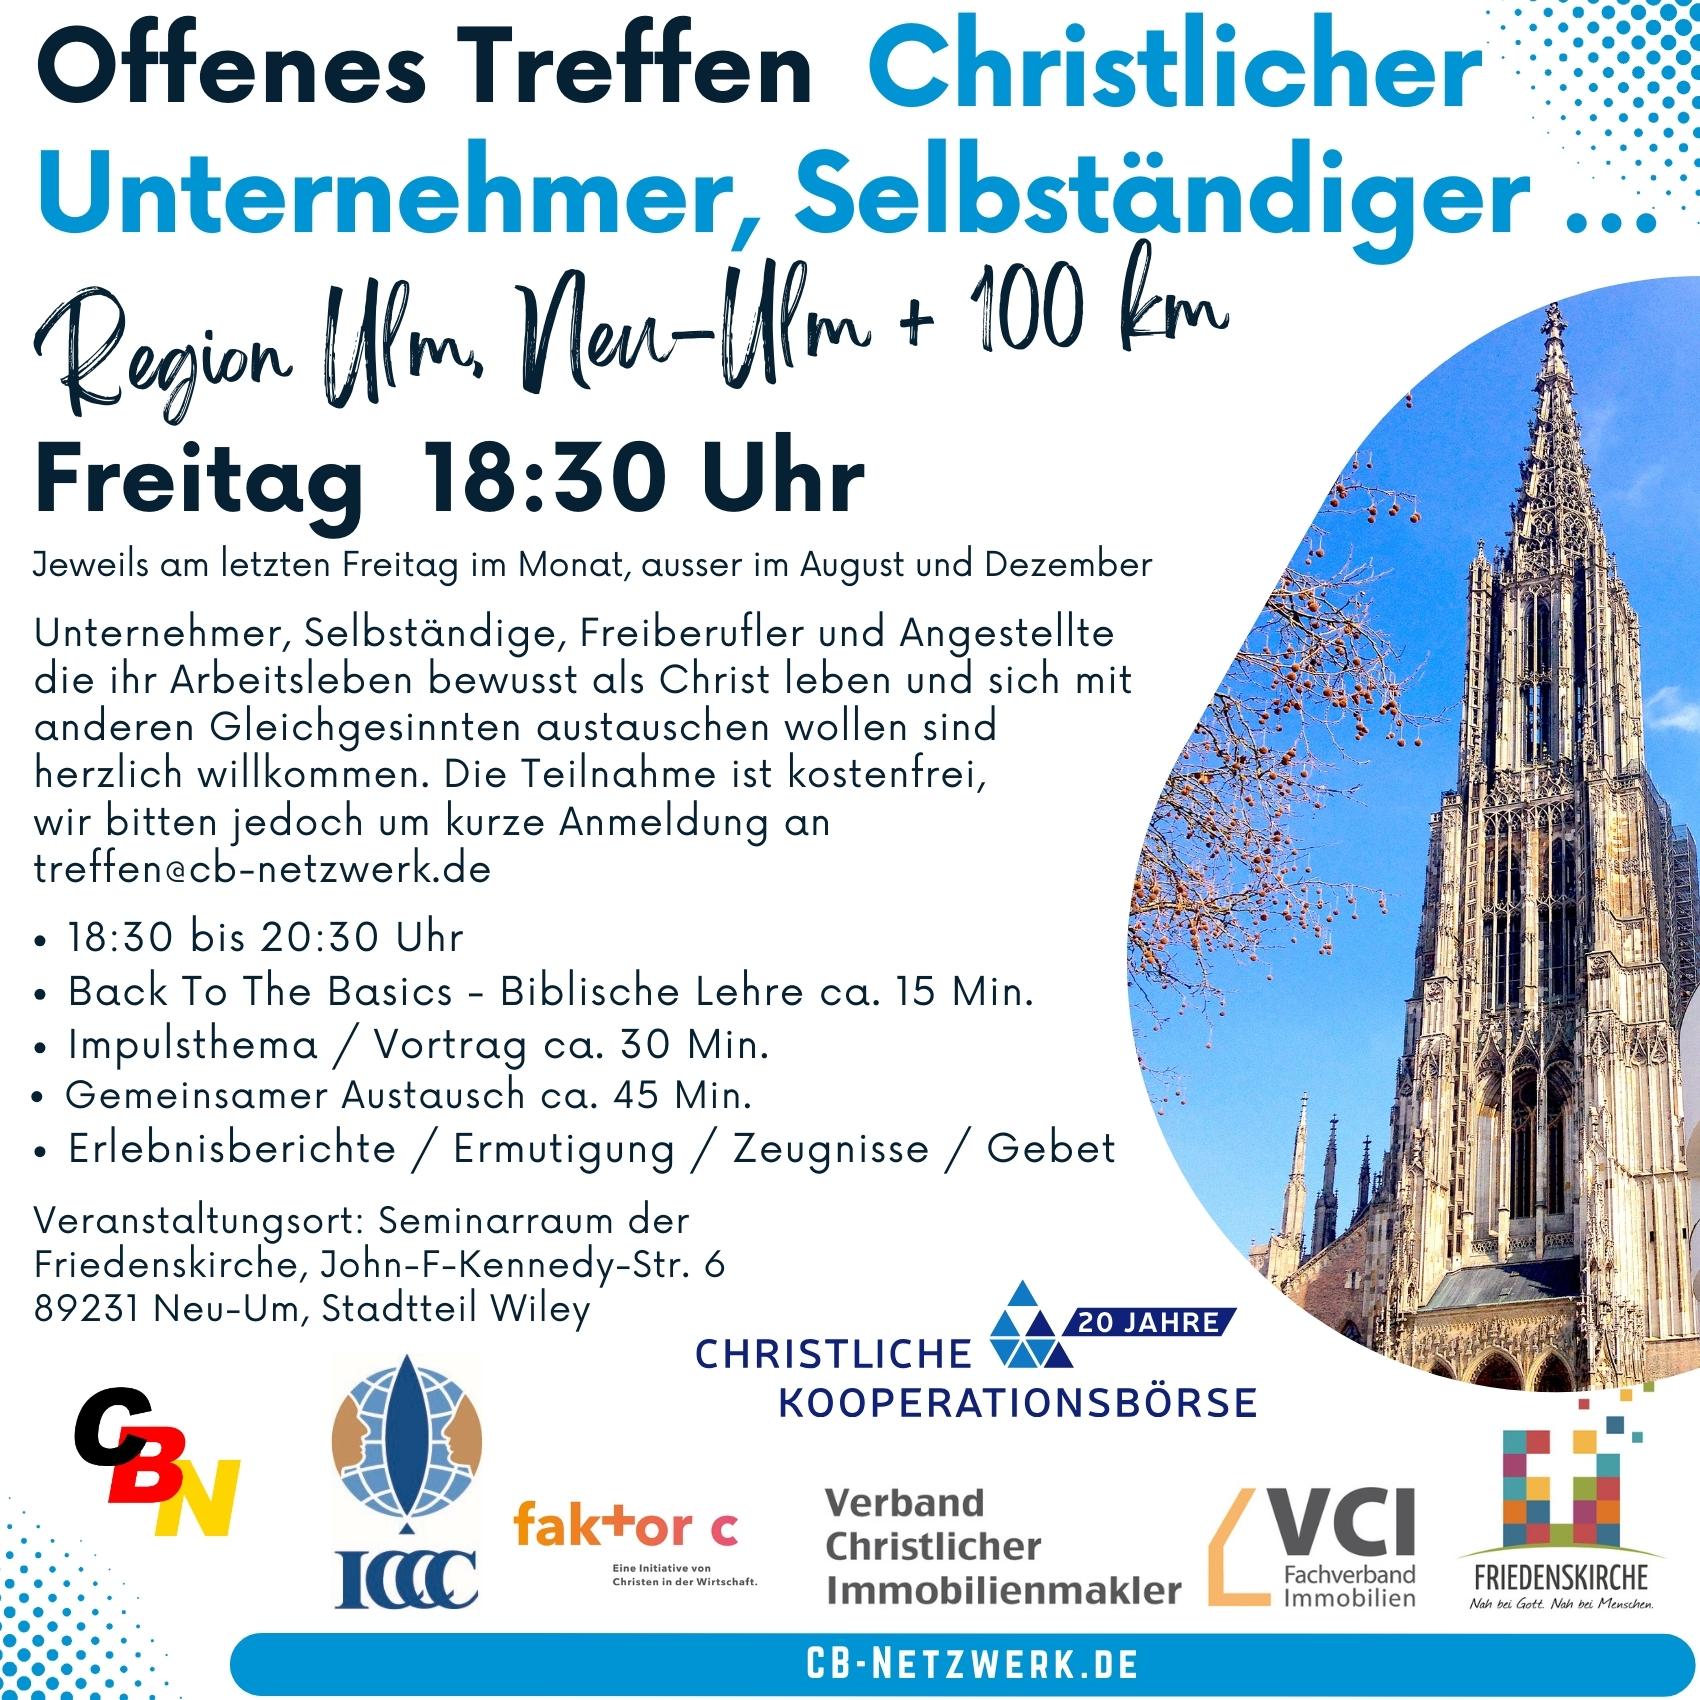 Offenes Treffen Christlicher Unternehmer und Geschäftsleute
        Region Ulm, Neu-Ulm + 100 km